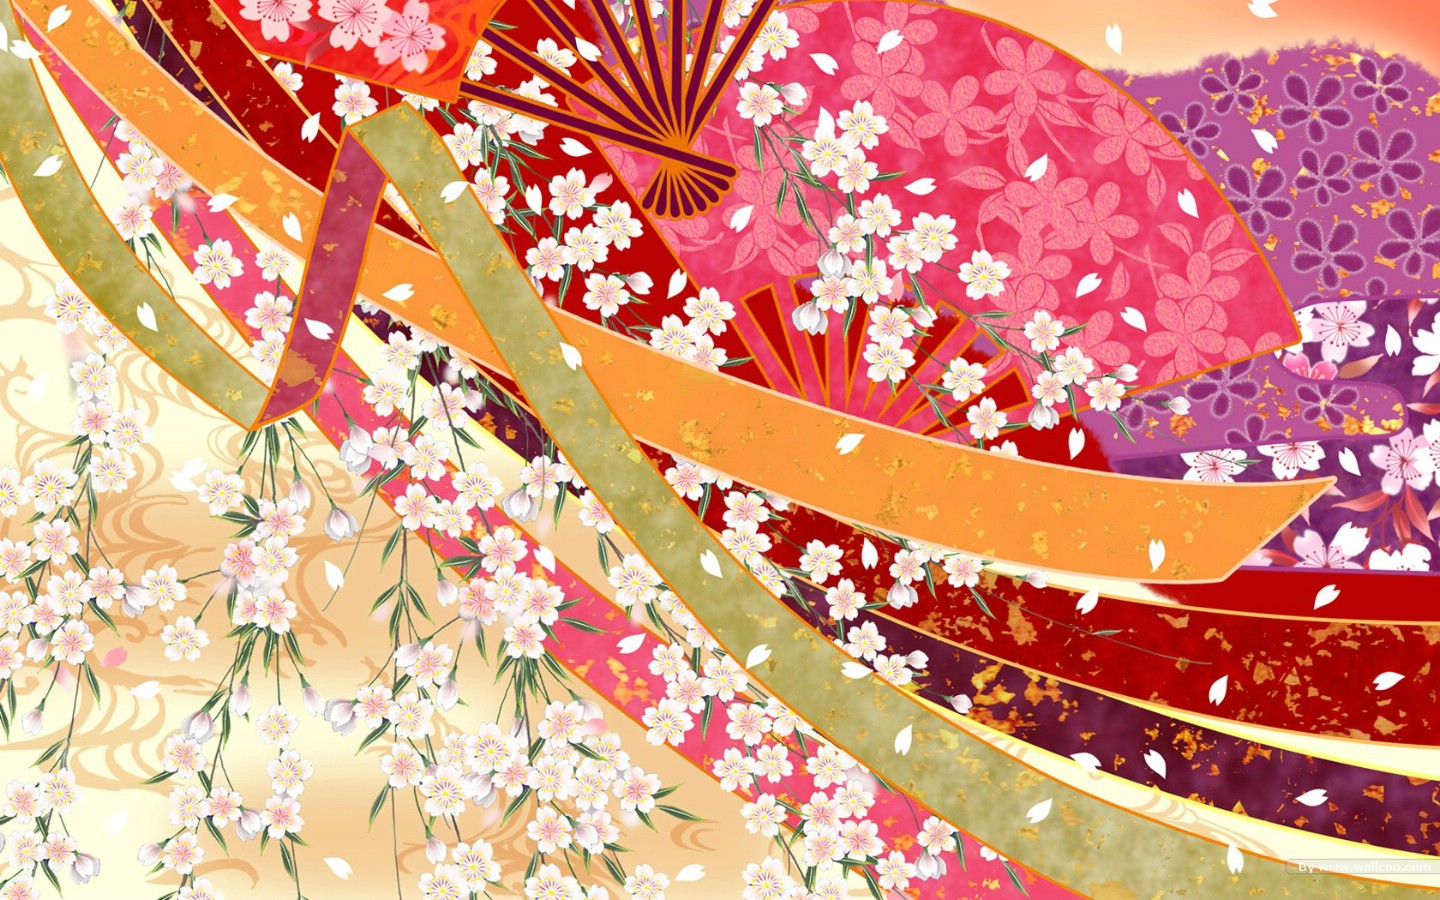 壁纸1440x900日本风格色彩与图案设计壁纸壁纸 日本风格色彩与图案设计壁纸壁纸 日本风格色彩与图案设计壁纸图片 日本风格色彩与图案设计壁纸素材 创意壁纸 创意图库 创意图片素材桌面壁纸